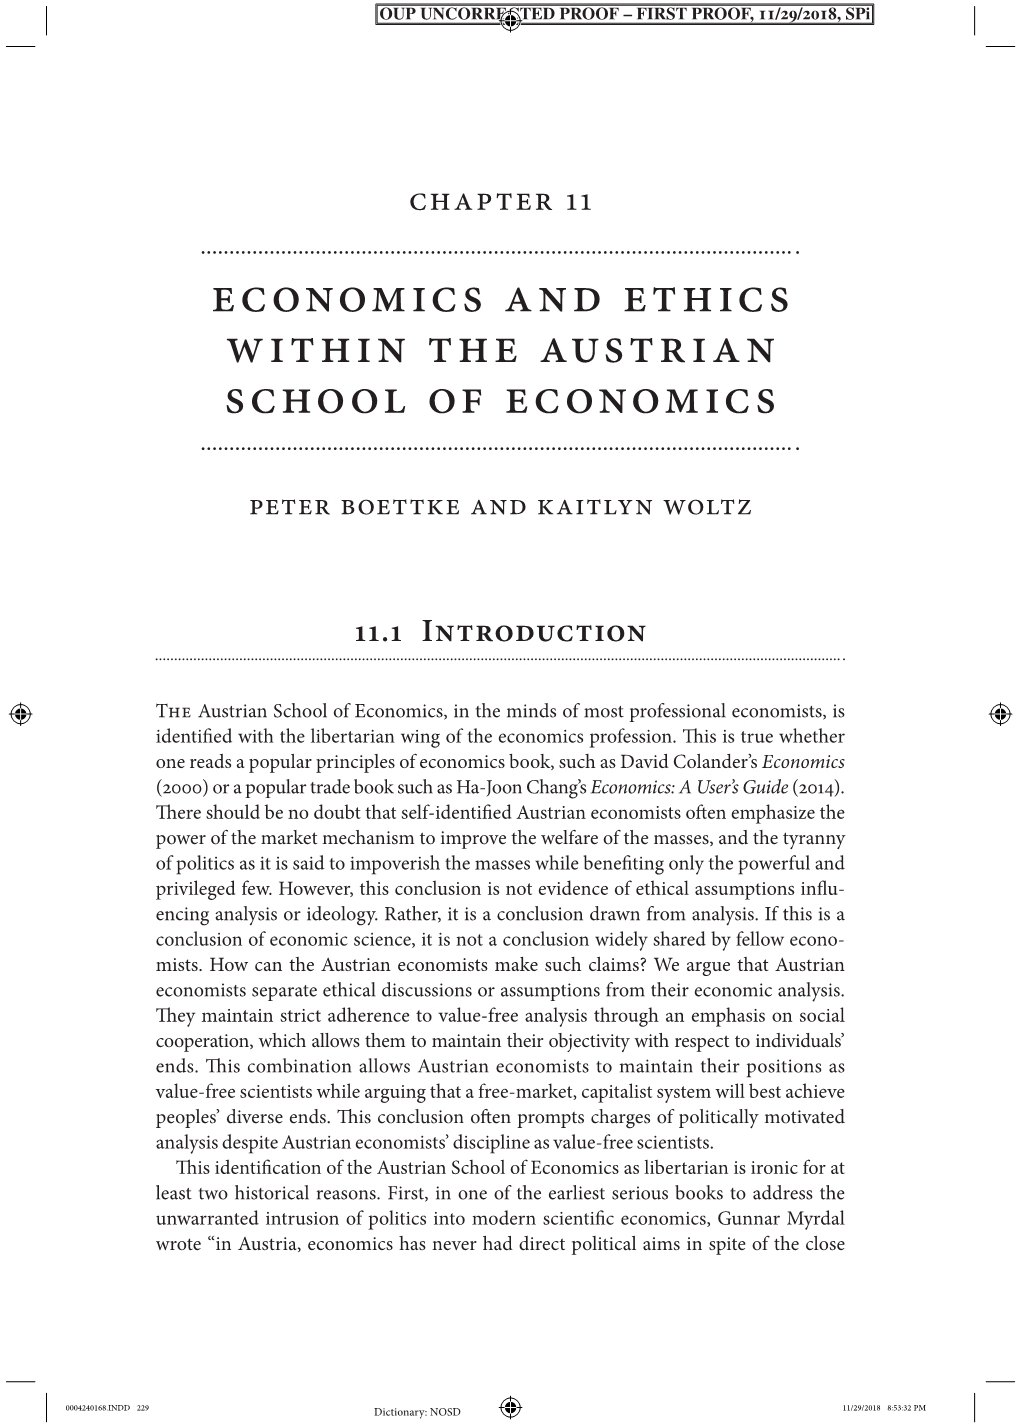 Economics and Ethics Within the Austrian School of Economics